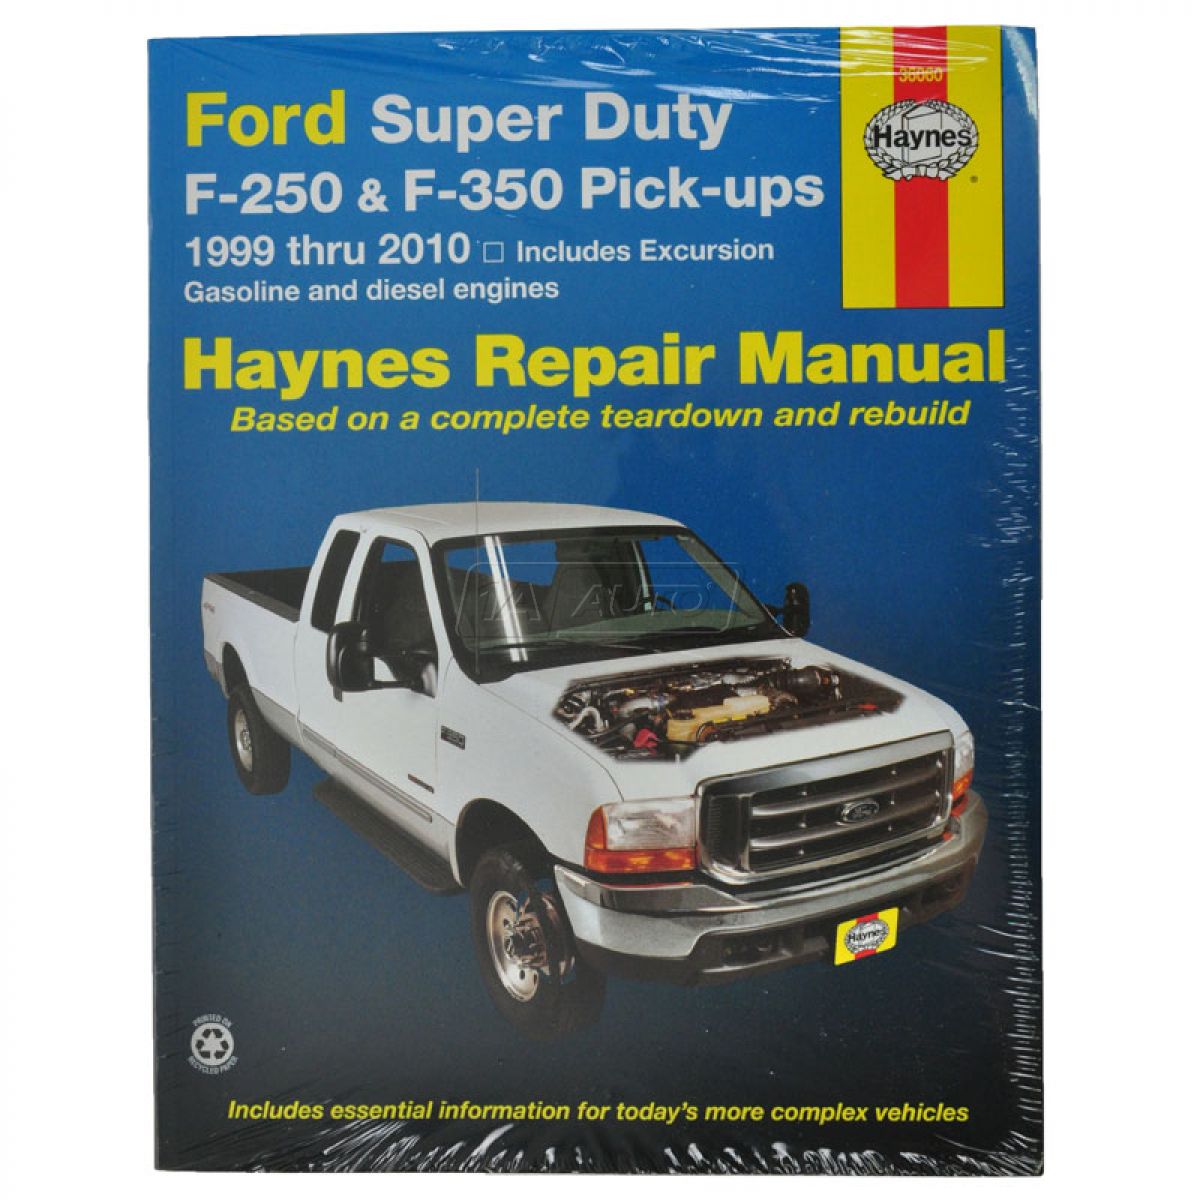 Haynes repair manual ford excursion #8